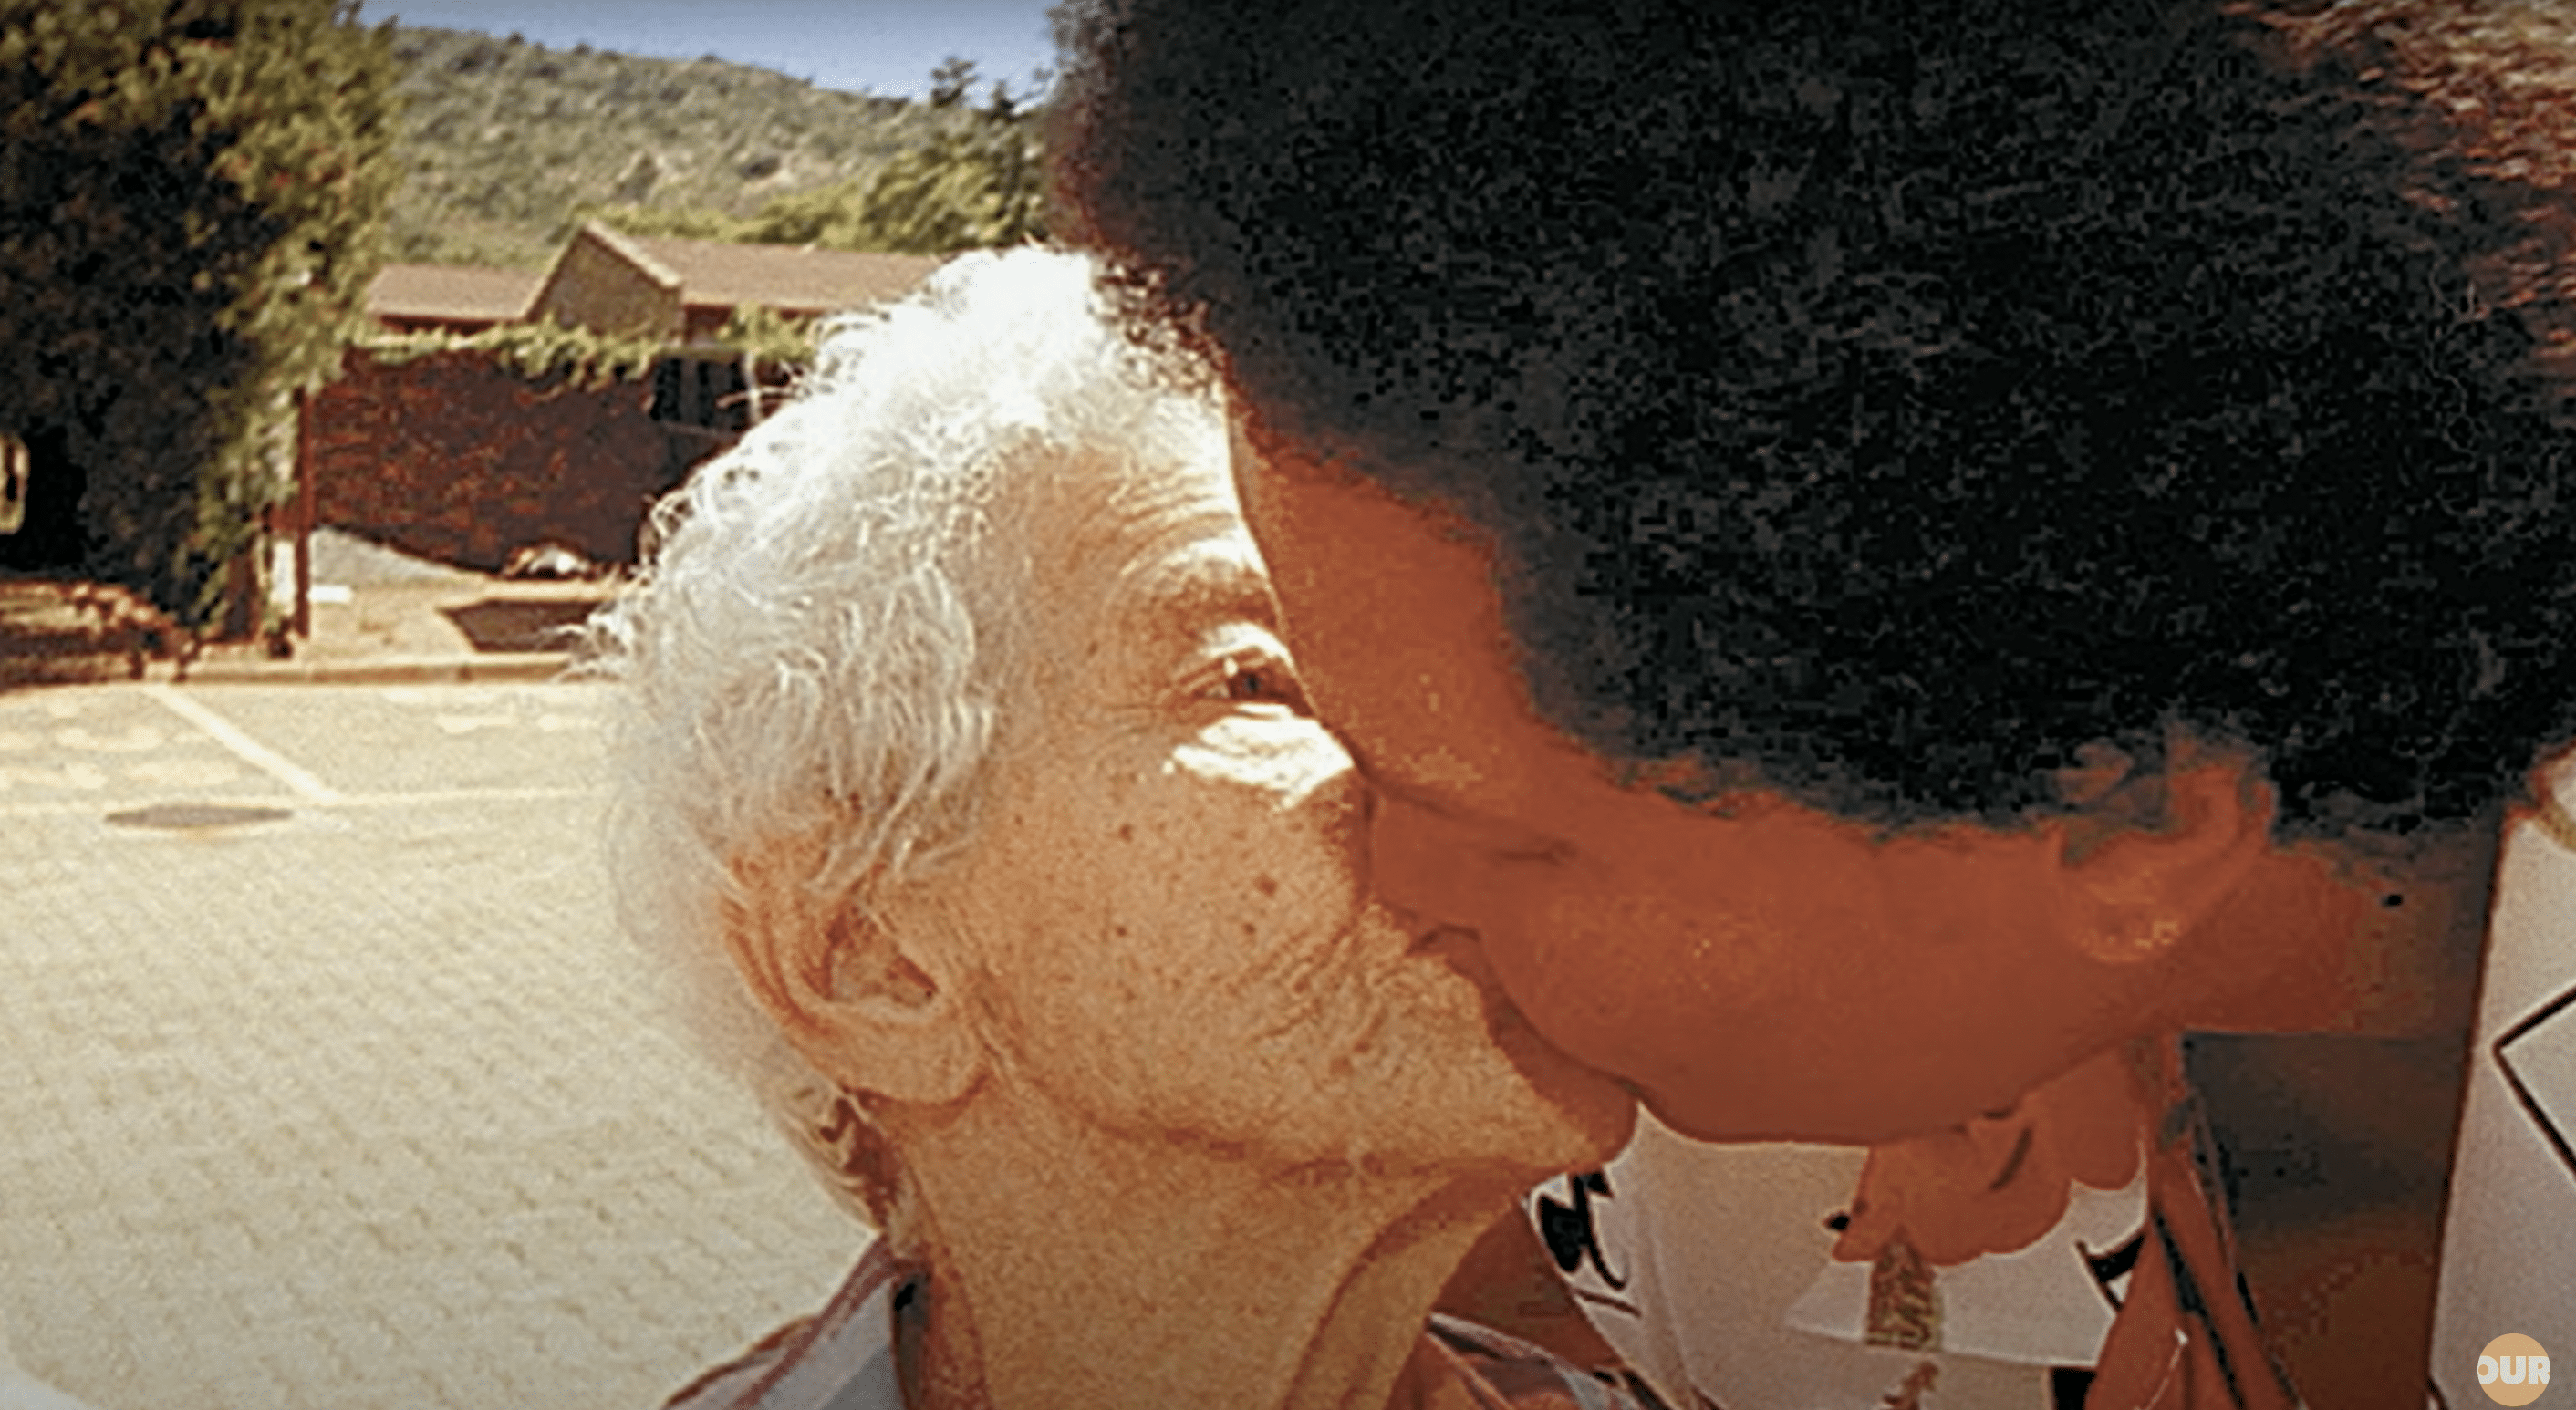 Sandra le da un beso tierno a su madre durante su reencuentro. | Foto: YouTube.com/Our Life